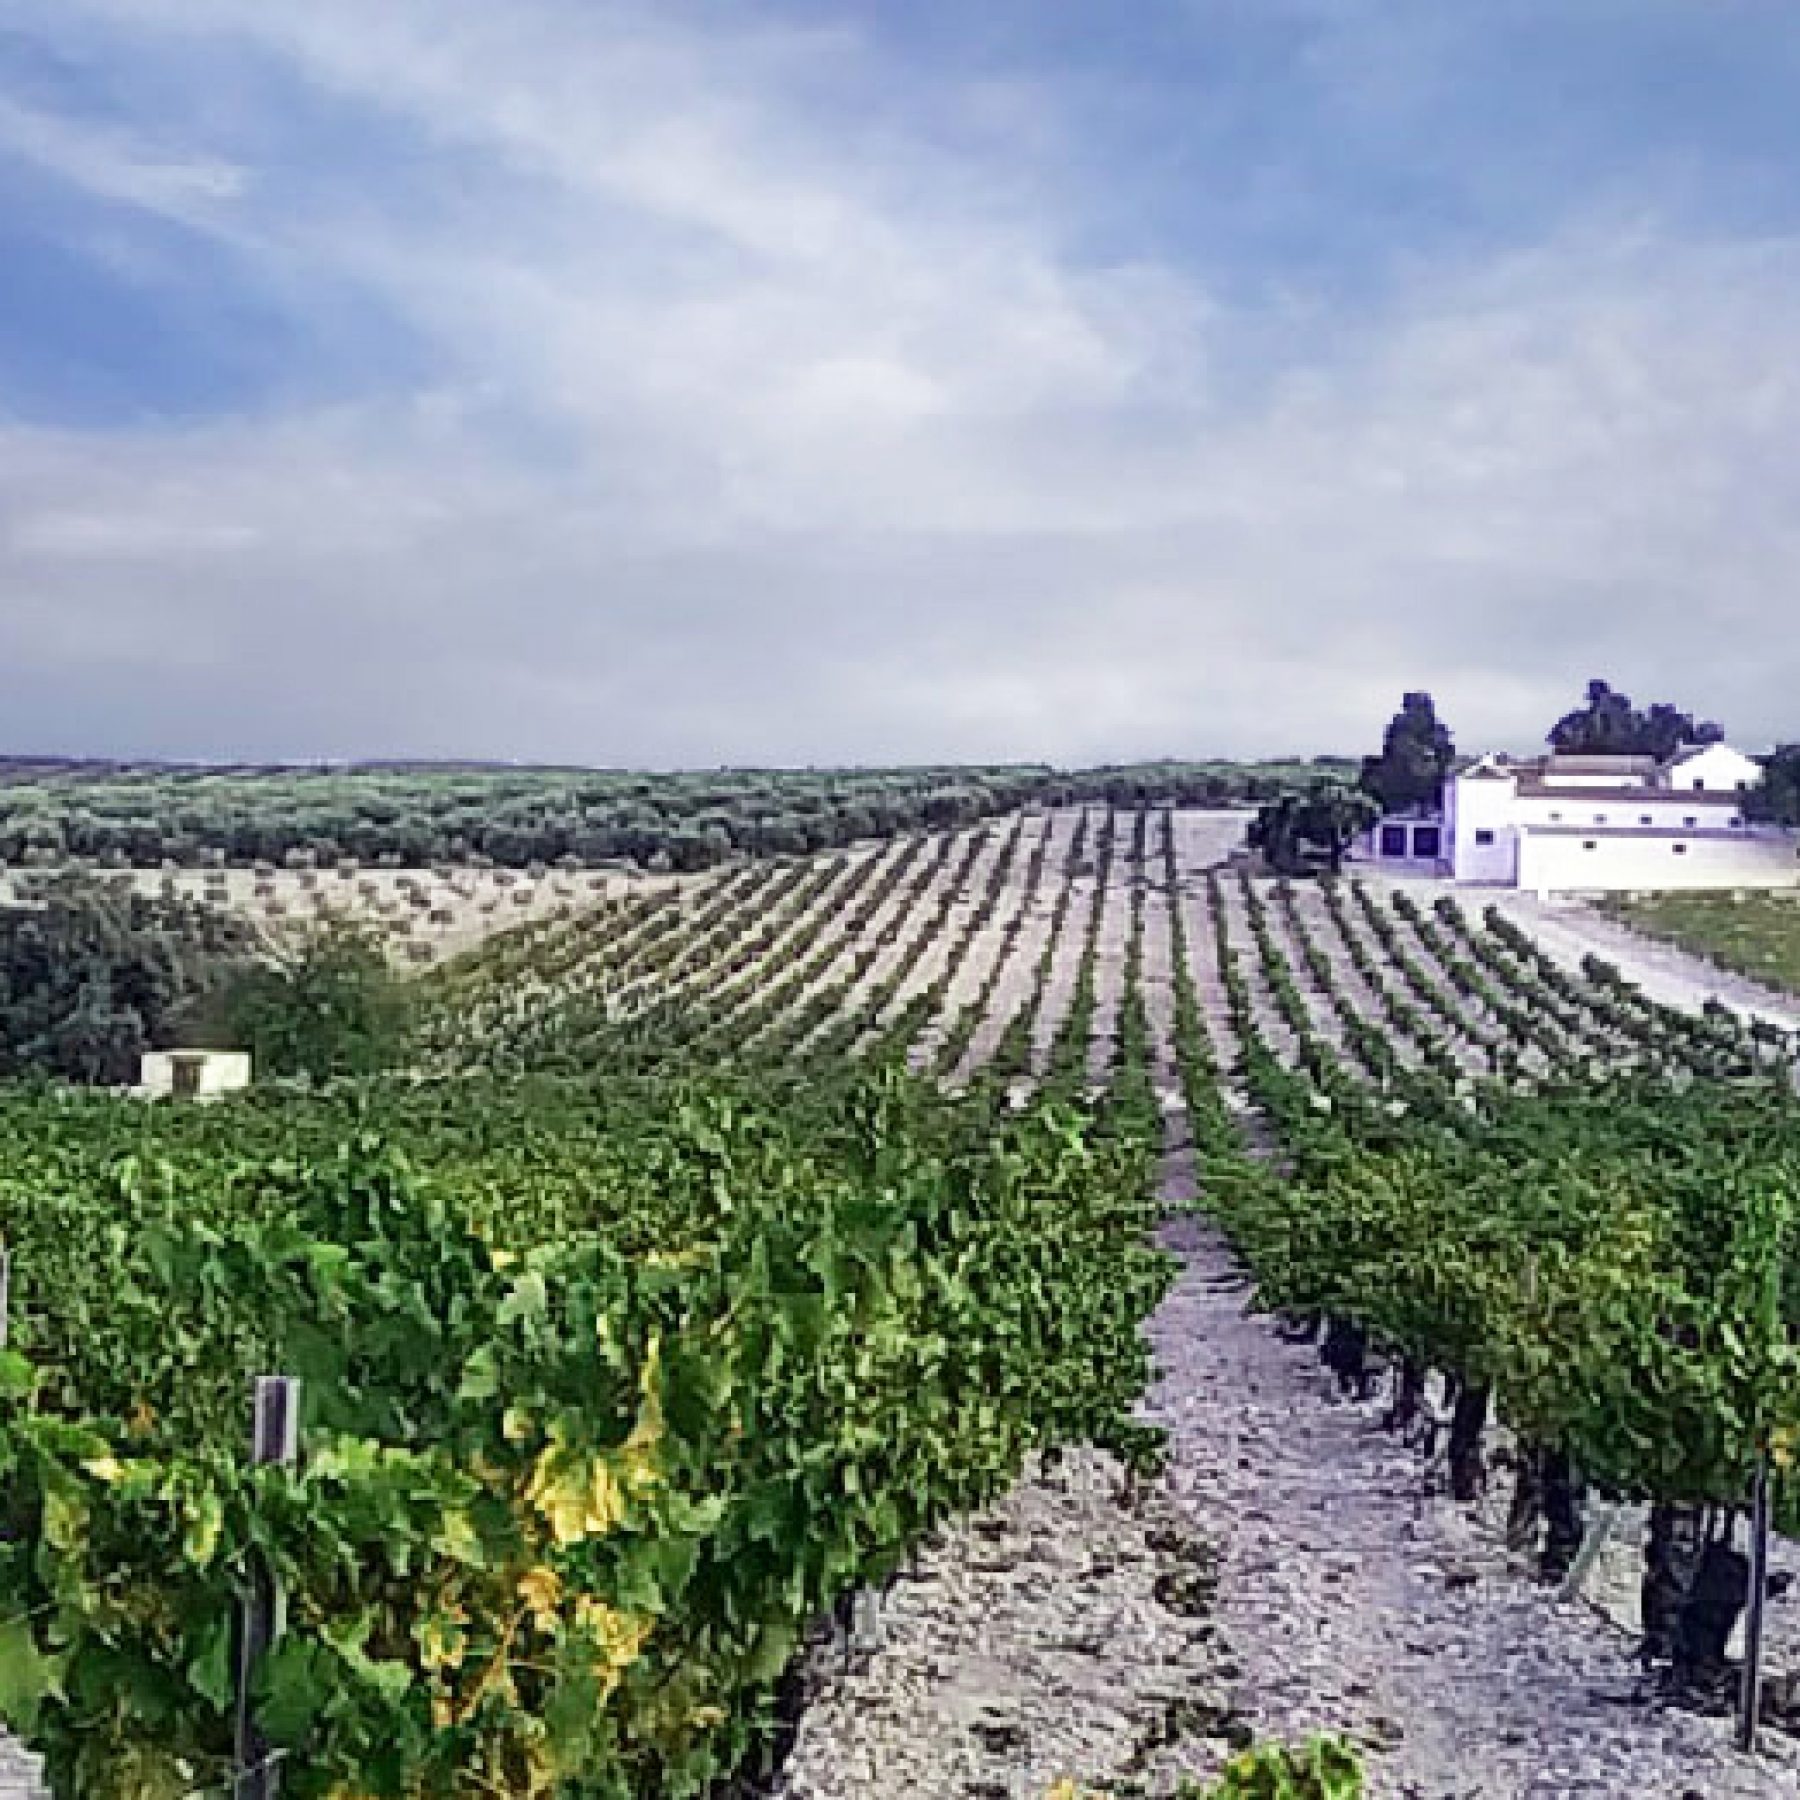 Visit to the winery Lagar de los Frailes, Puente Genil